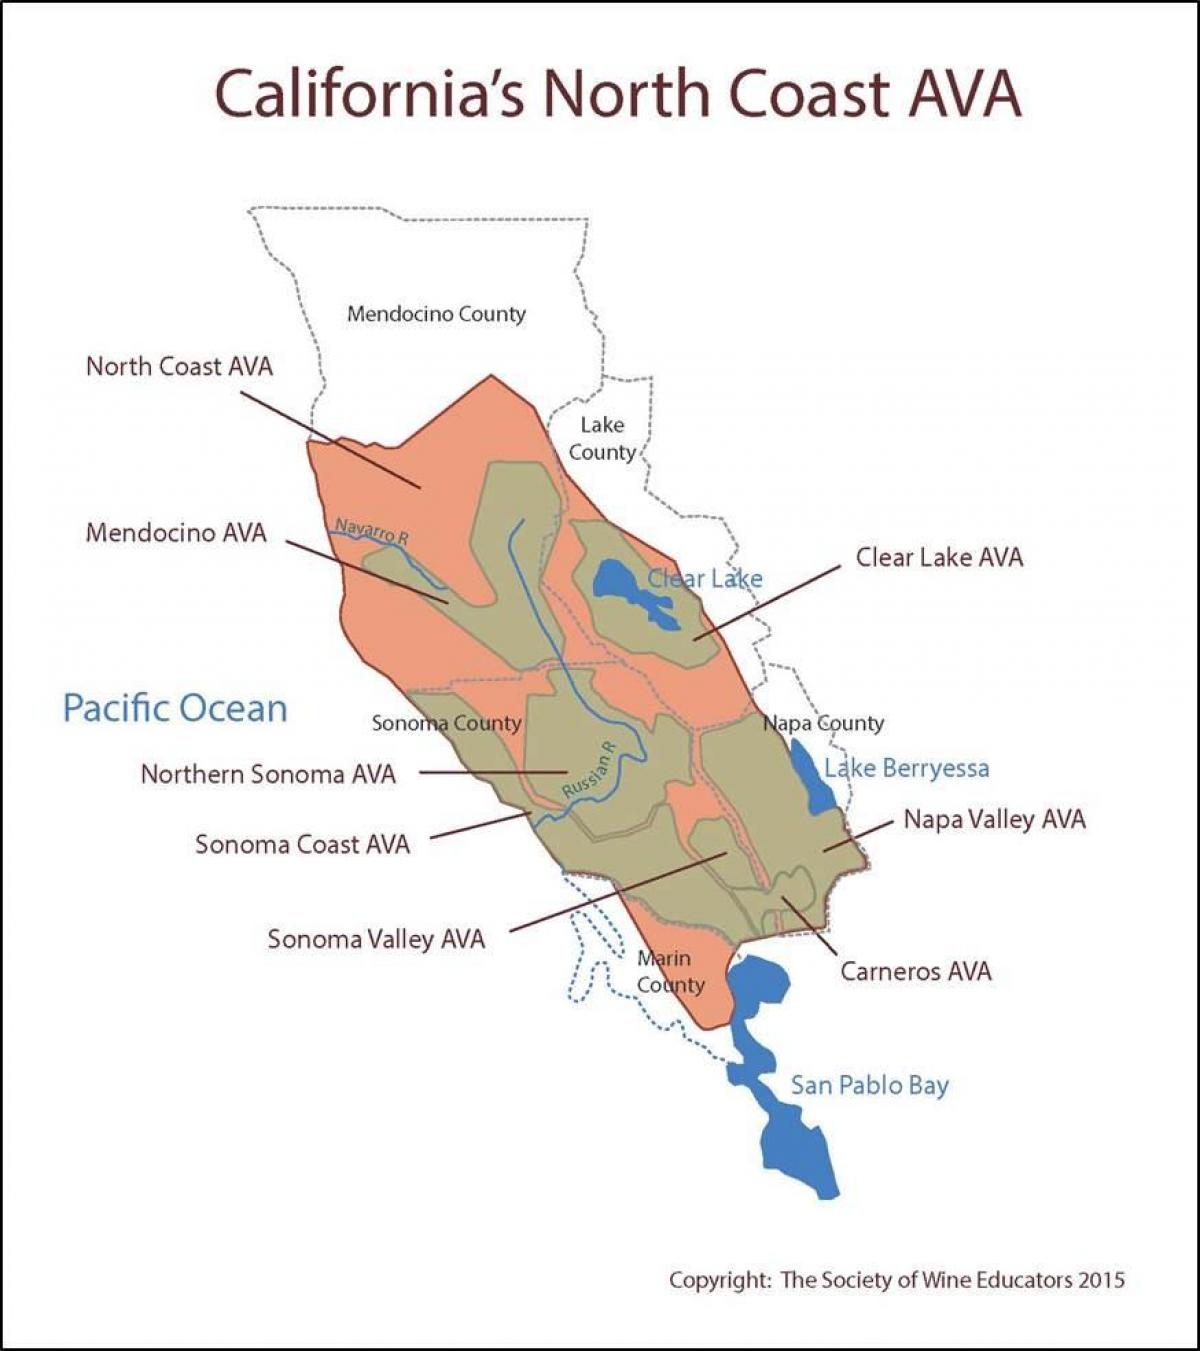 Zemljevid kaliforniji obali severno od San Francisca